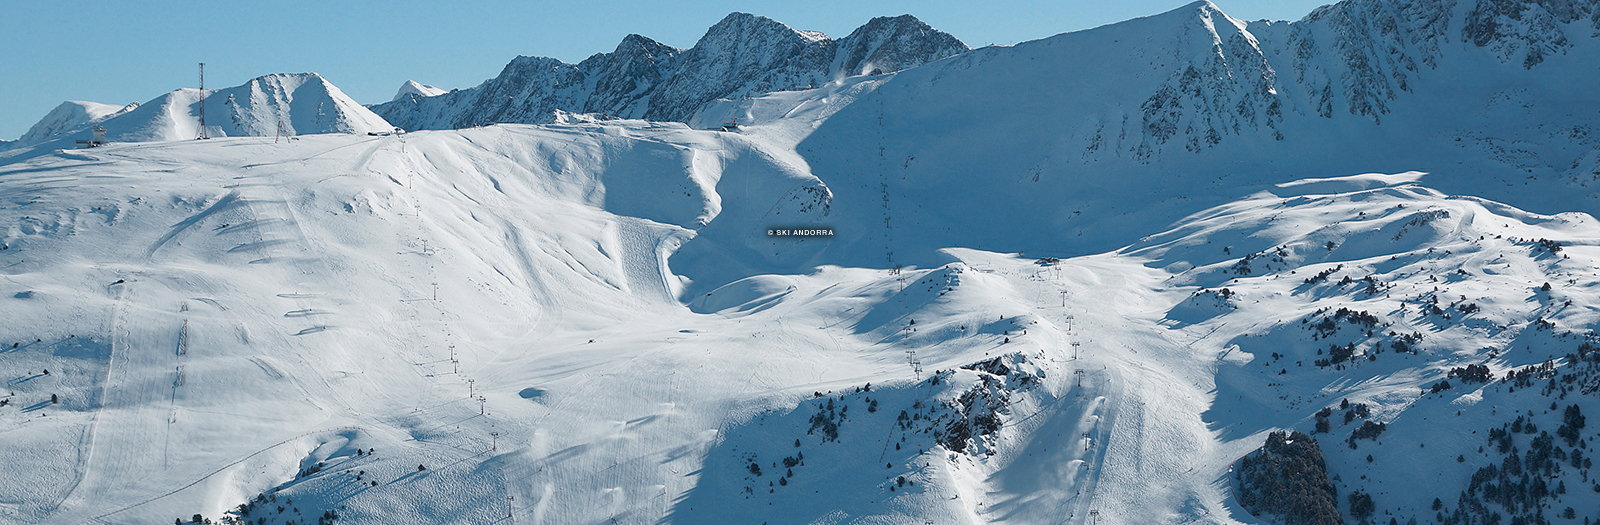 Andorra Ski Resort, andorra skiing packages, andorra skiing, pyrenees ski resort